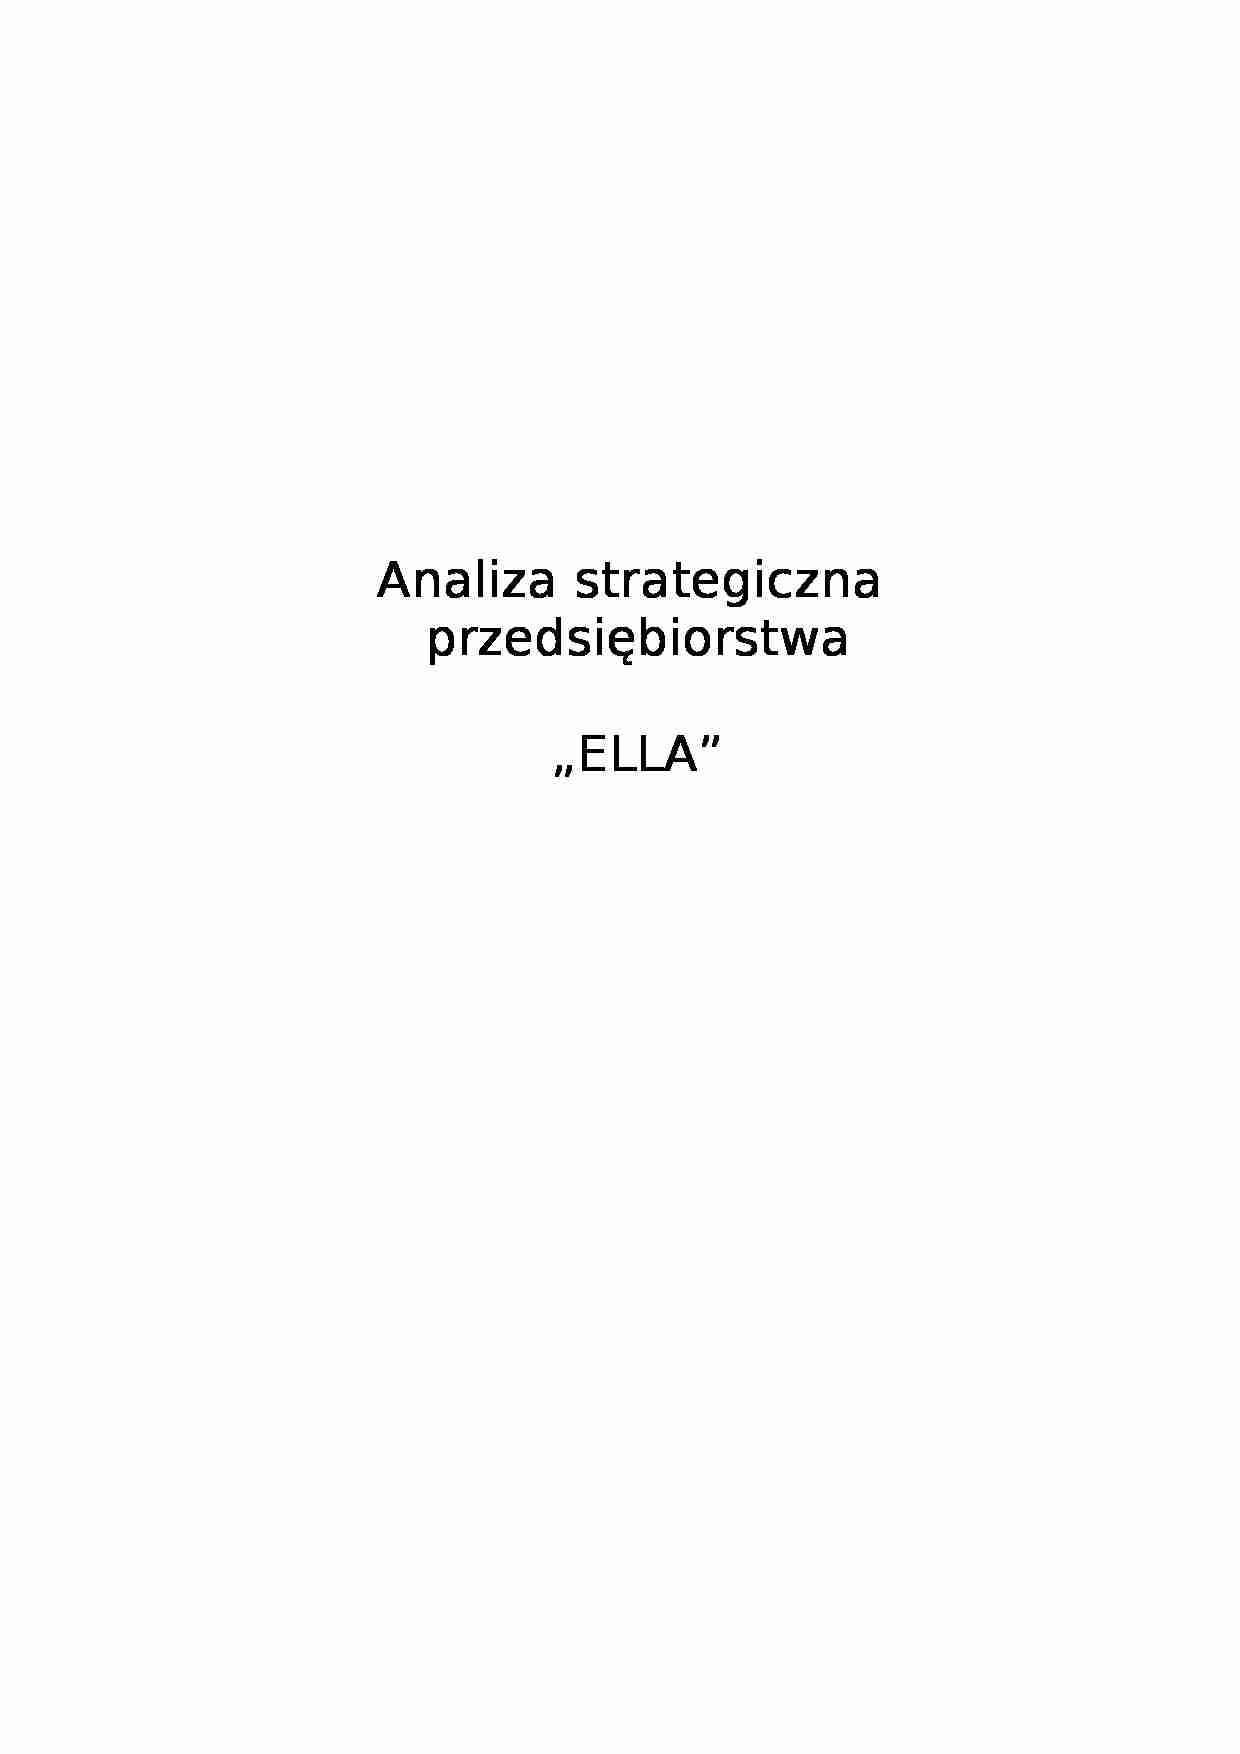 Analiza strategiczna przedsiębiorstwa ELLA - strona 1